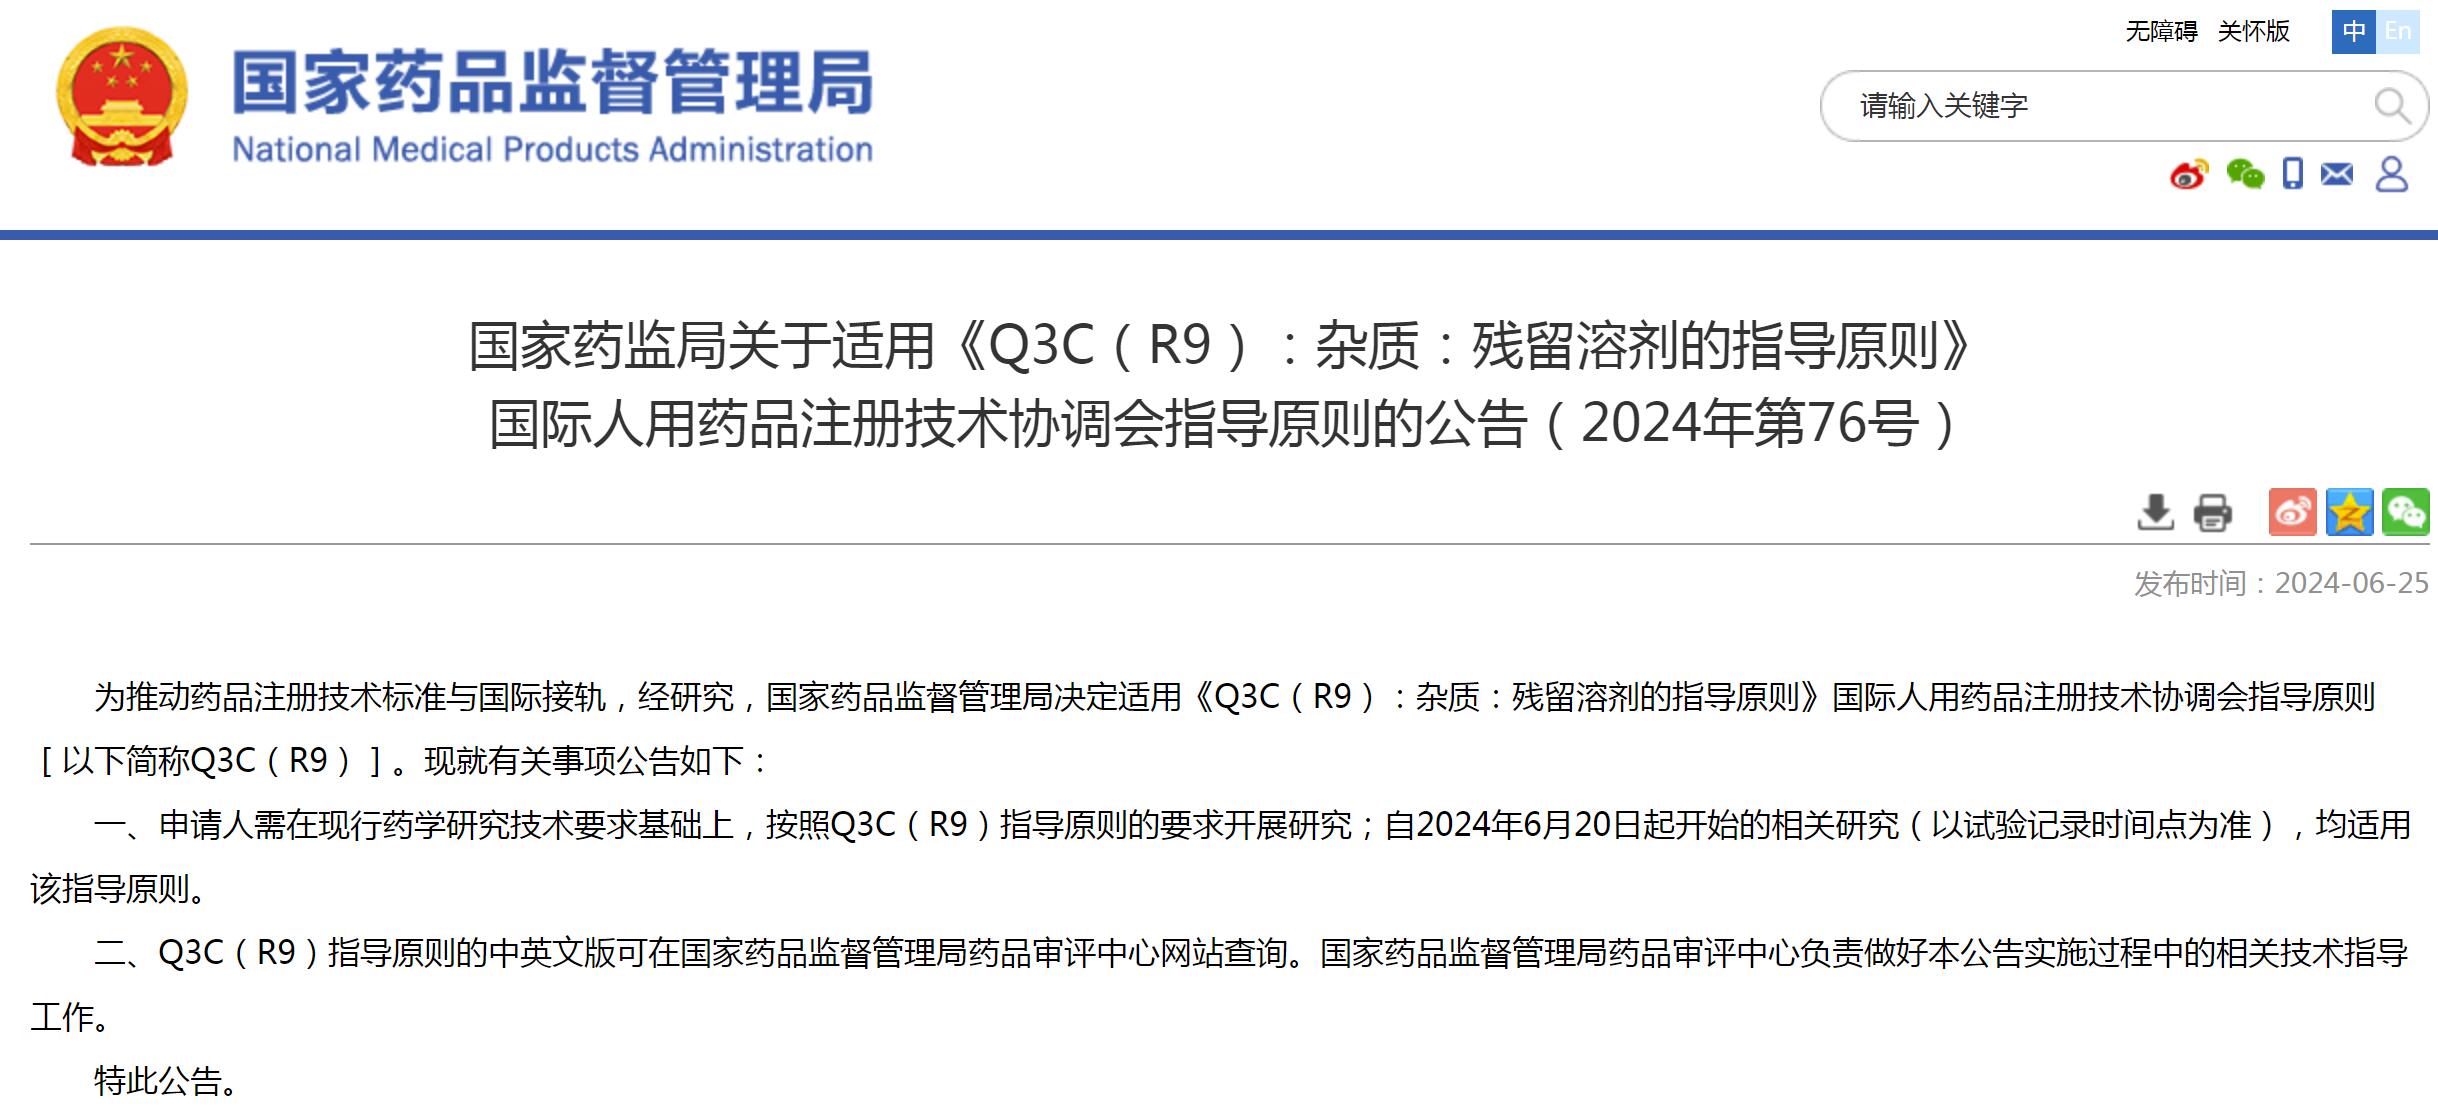 6月20日起，适用《Q3C（R9）：杂质：残留溶剂的指导原则》国际人用药品注册技术协调会指导原则